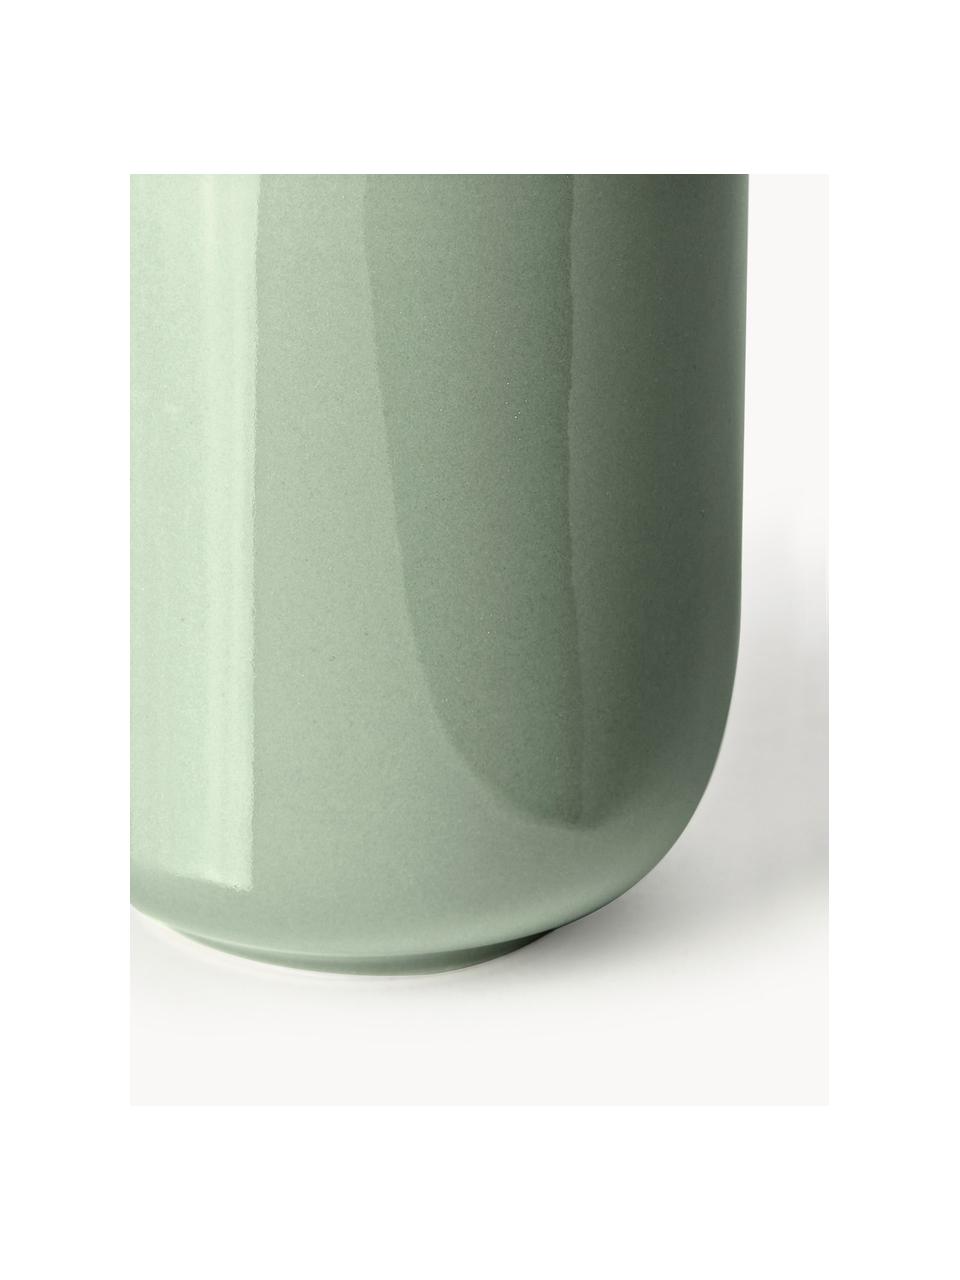 Tazze caffè in porcellana Nessa 4 pz, Porcellana a pasta dura di alta qualità smaltata, Verde salvia lucido, Ø 8 x Alt. 10 cm, 200 ml